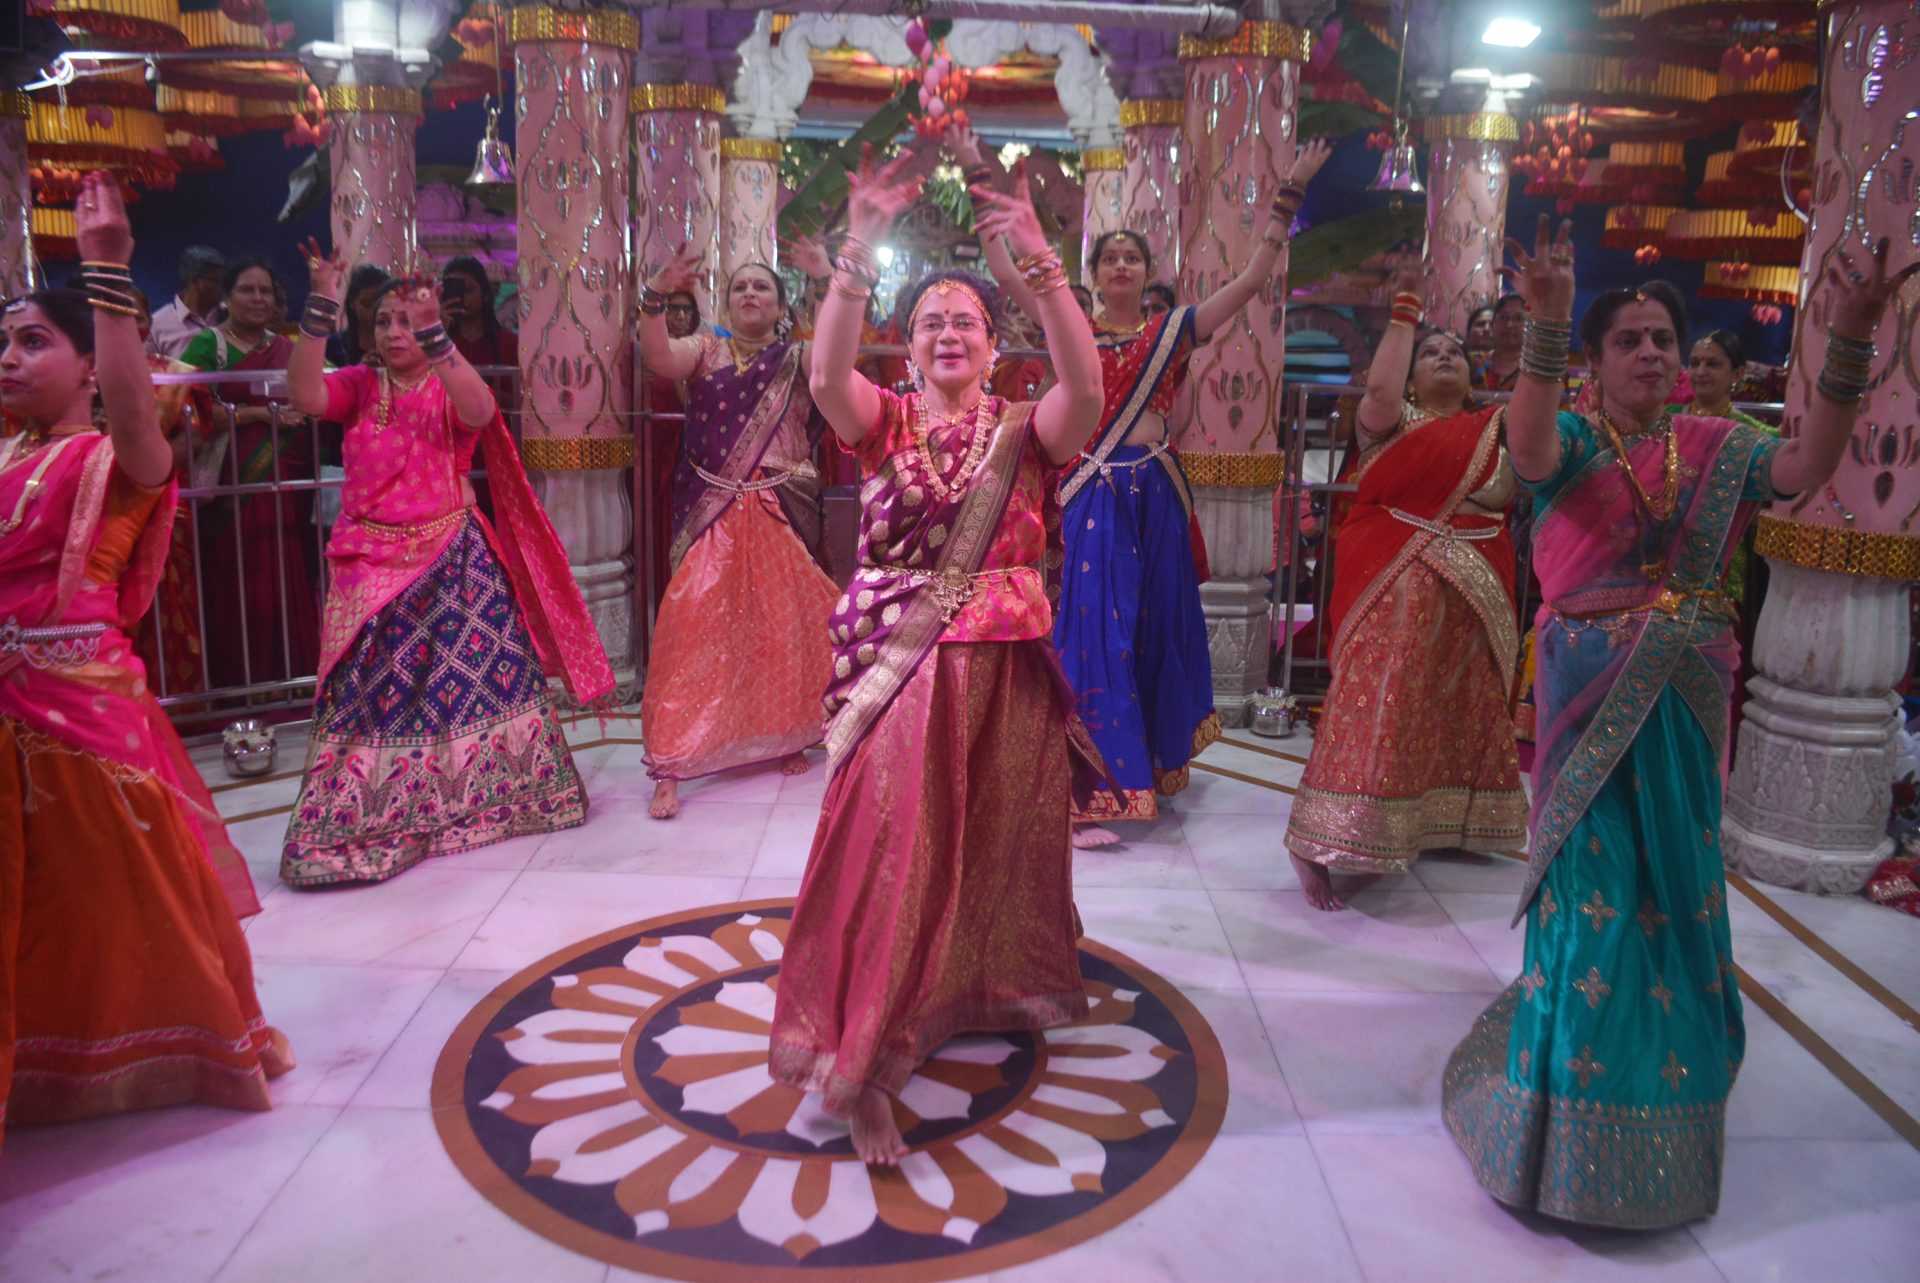 श्री महालक्ष्मी देवीला पारंपरिक 'देवी जागर' नृत्यवंदनेद्वारे नमन